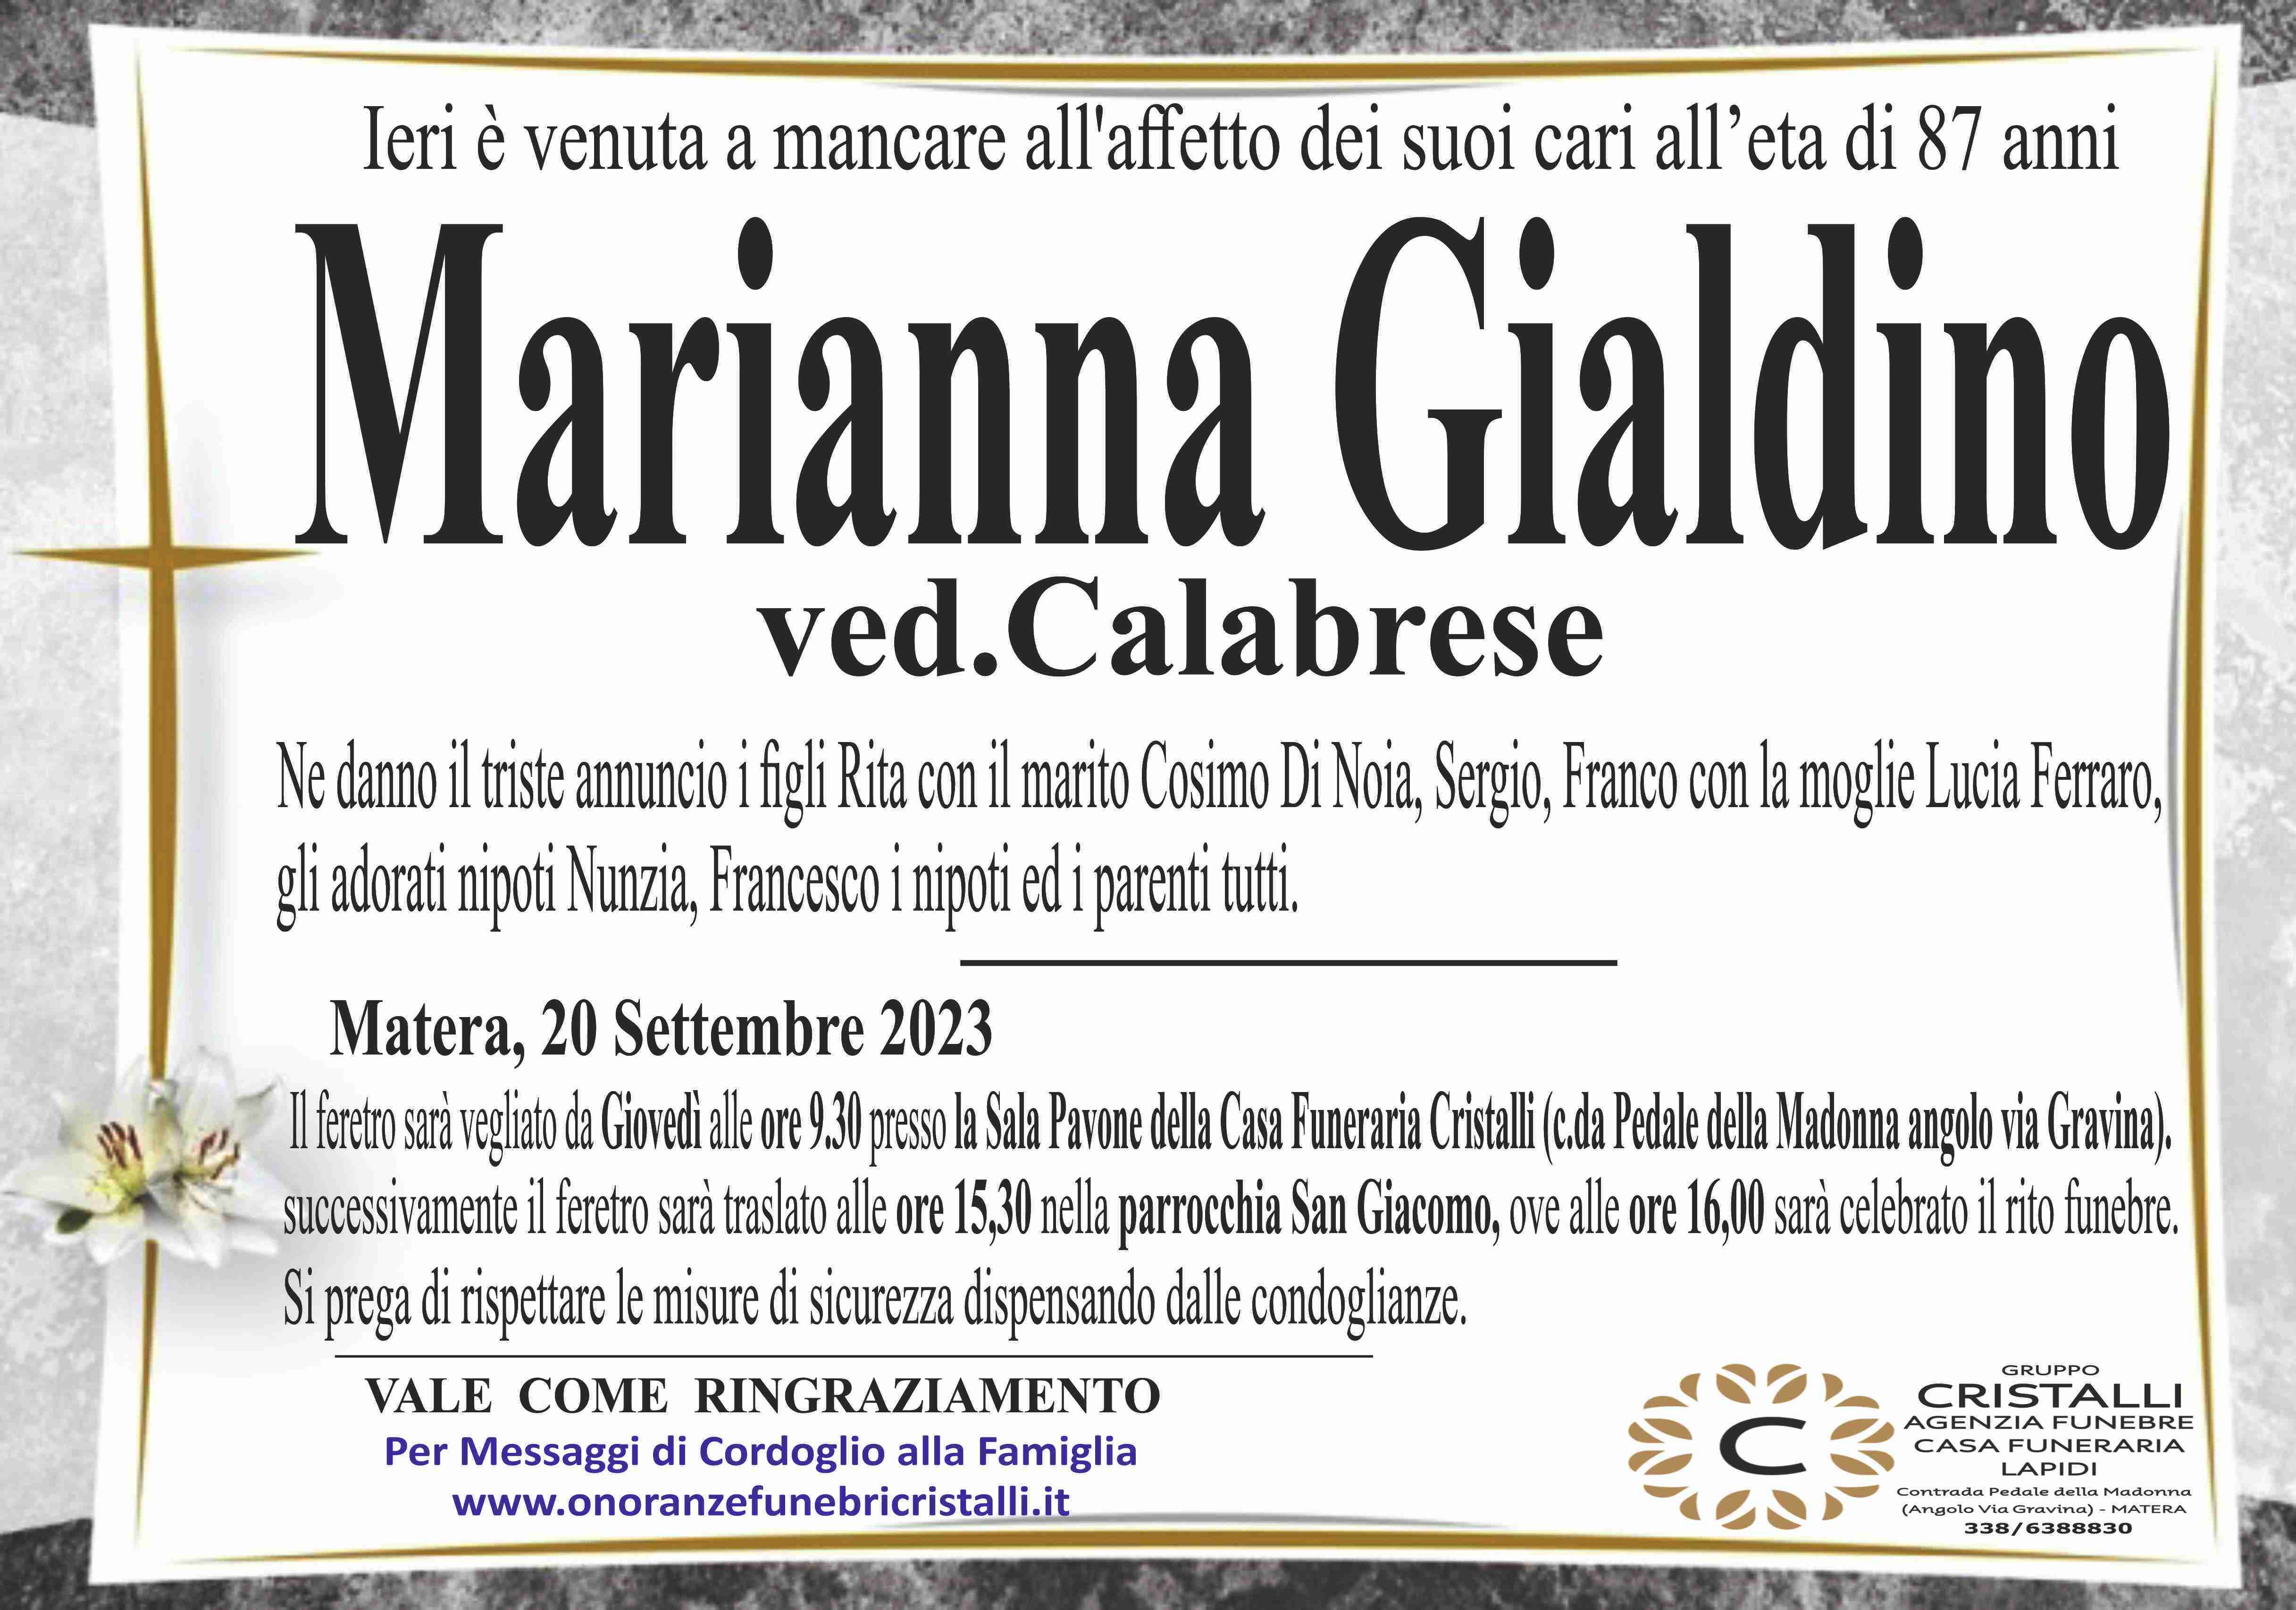 Marianna Gialdino